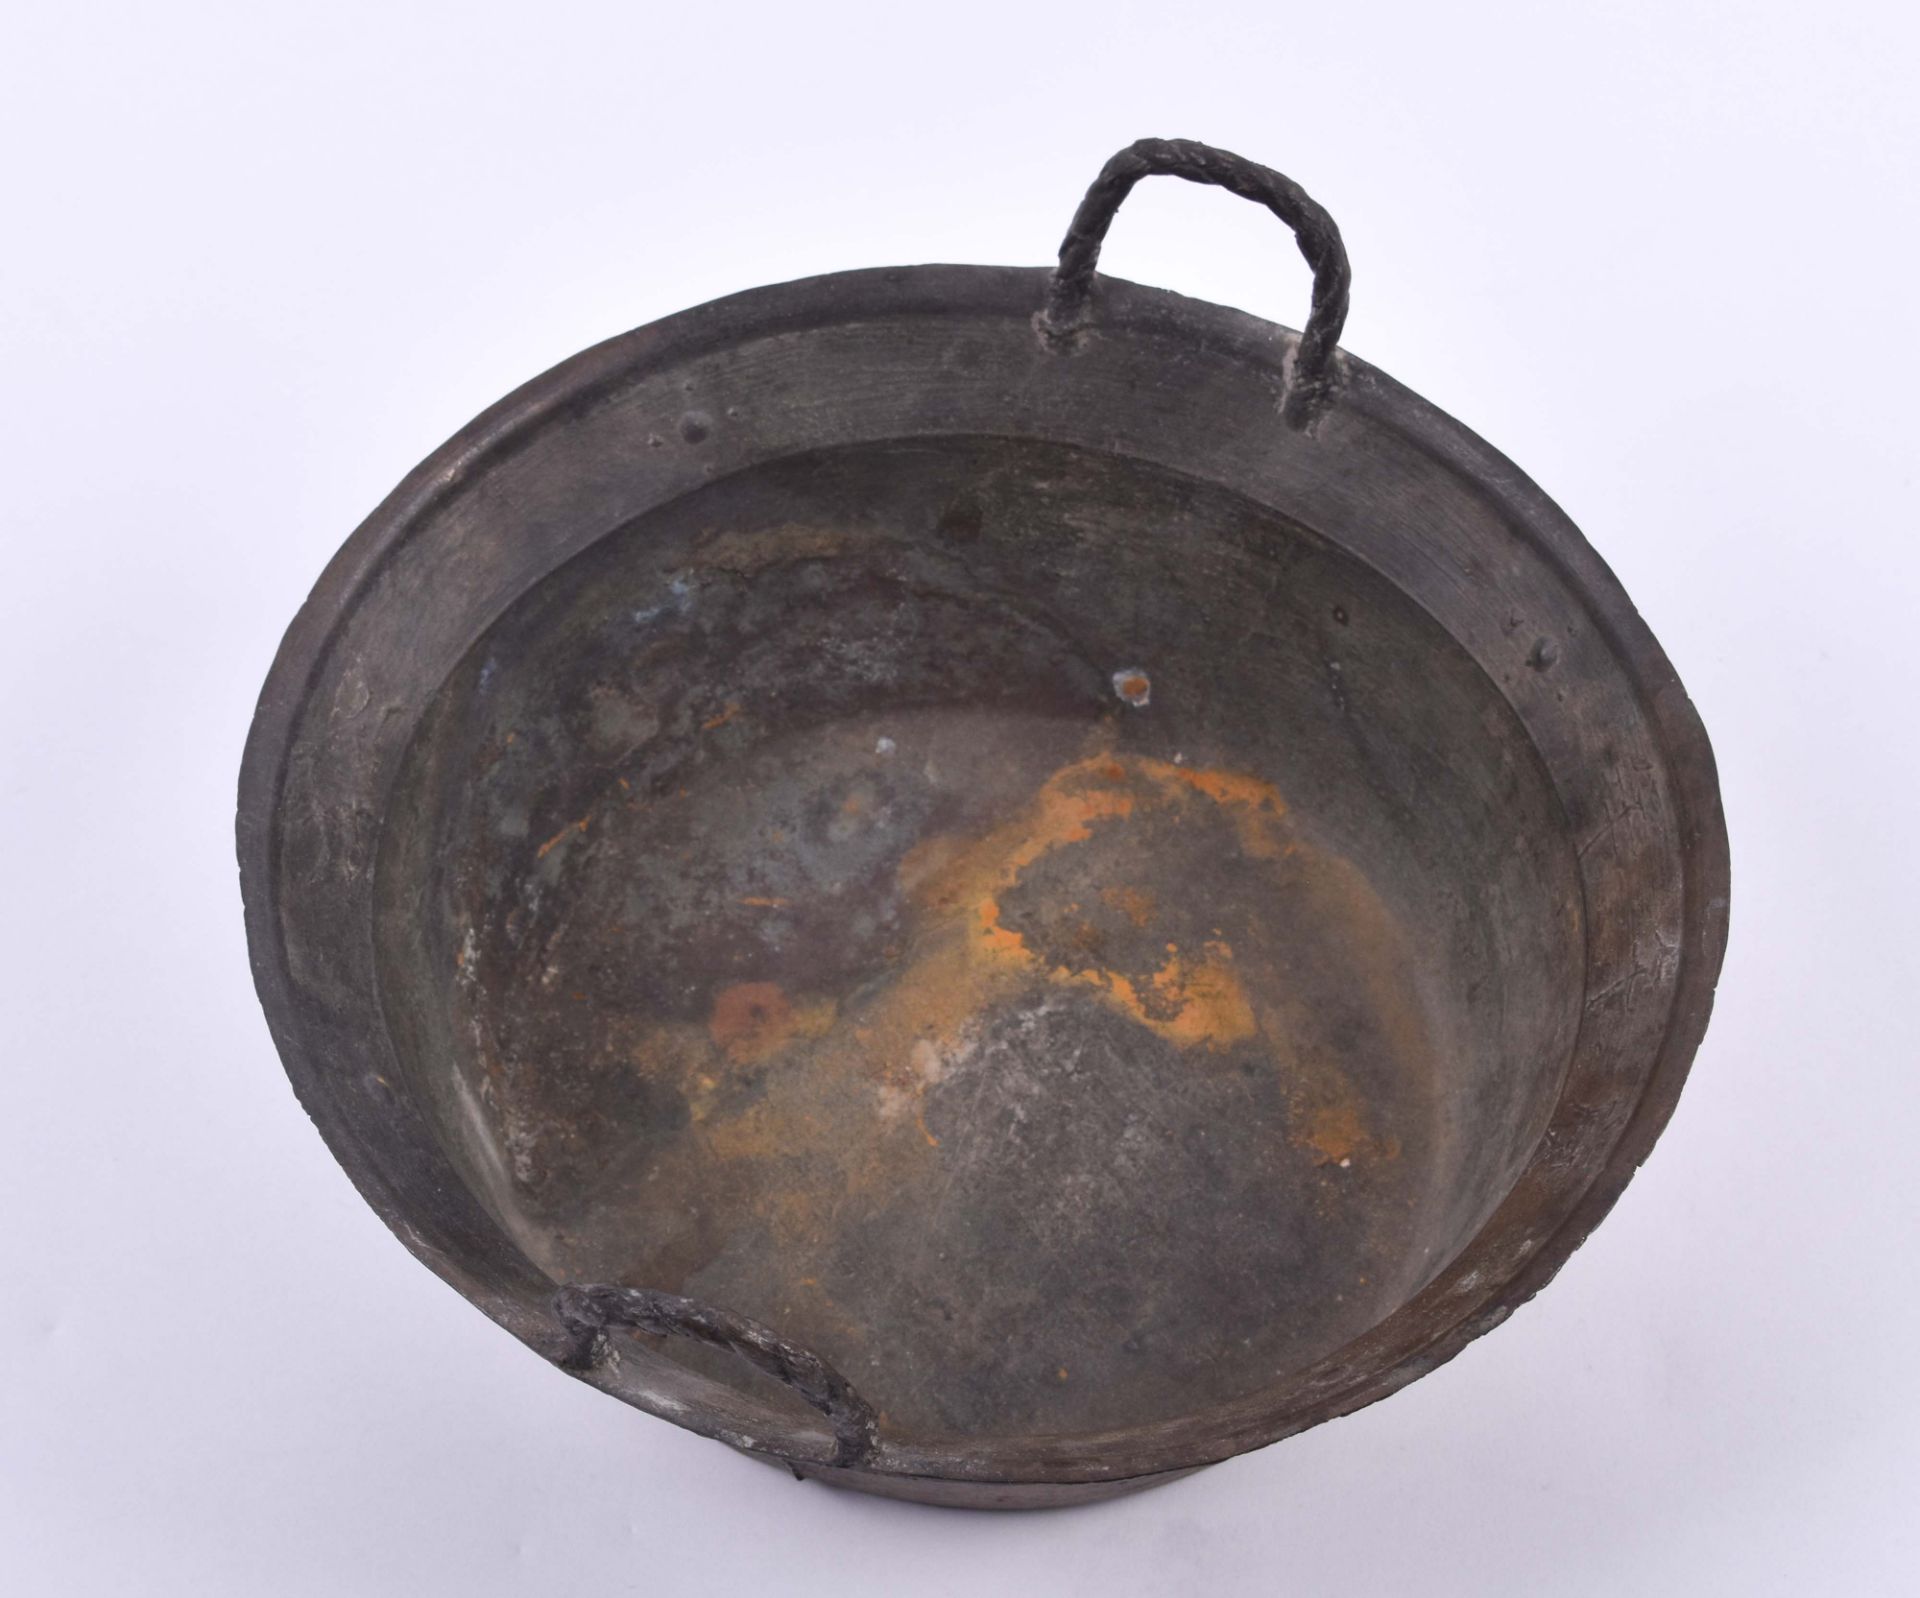  Ritual bowl China Qing dynasty - Image 6 of 6